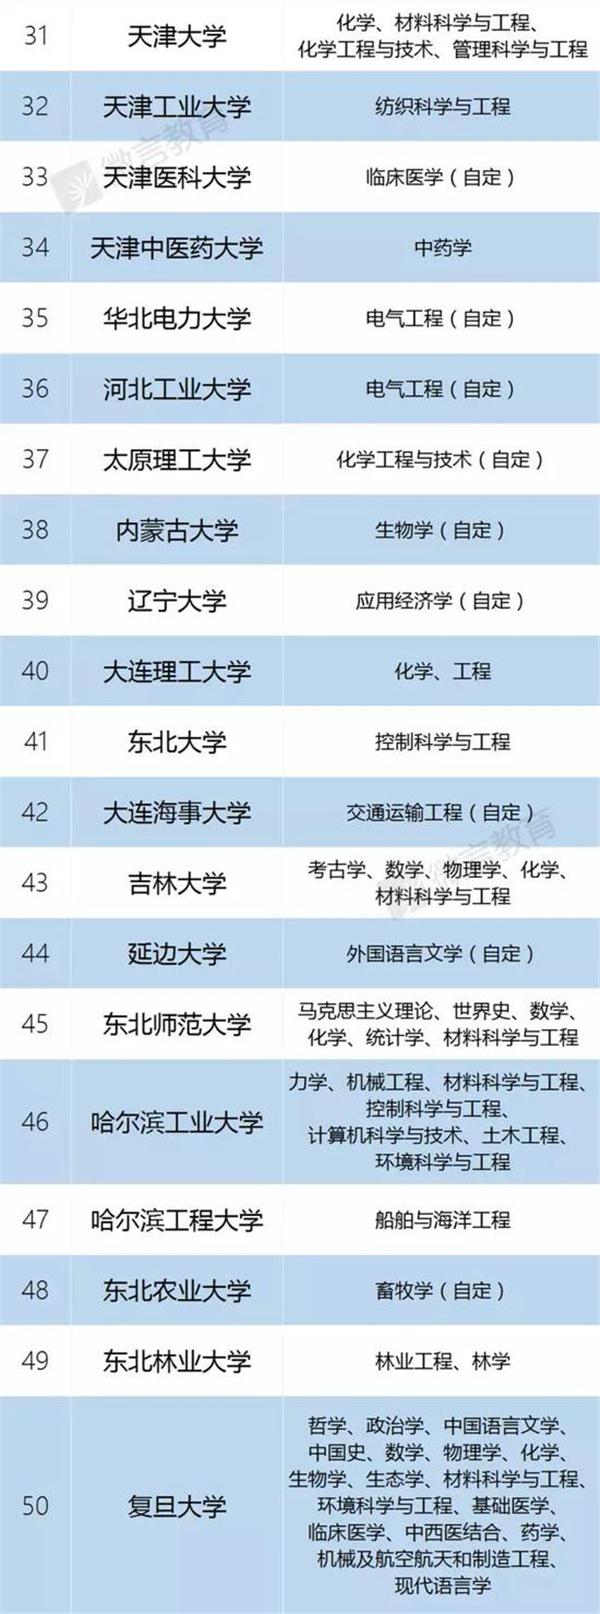 双一流建设高校名单公布 上海这些高校入围